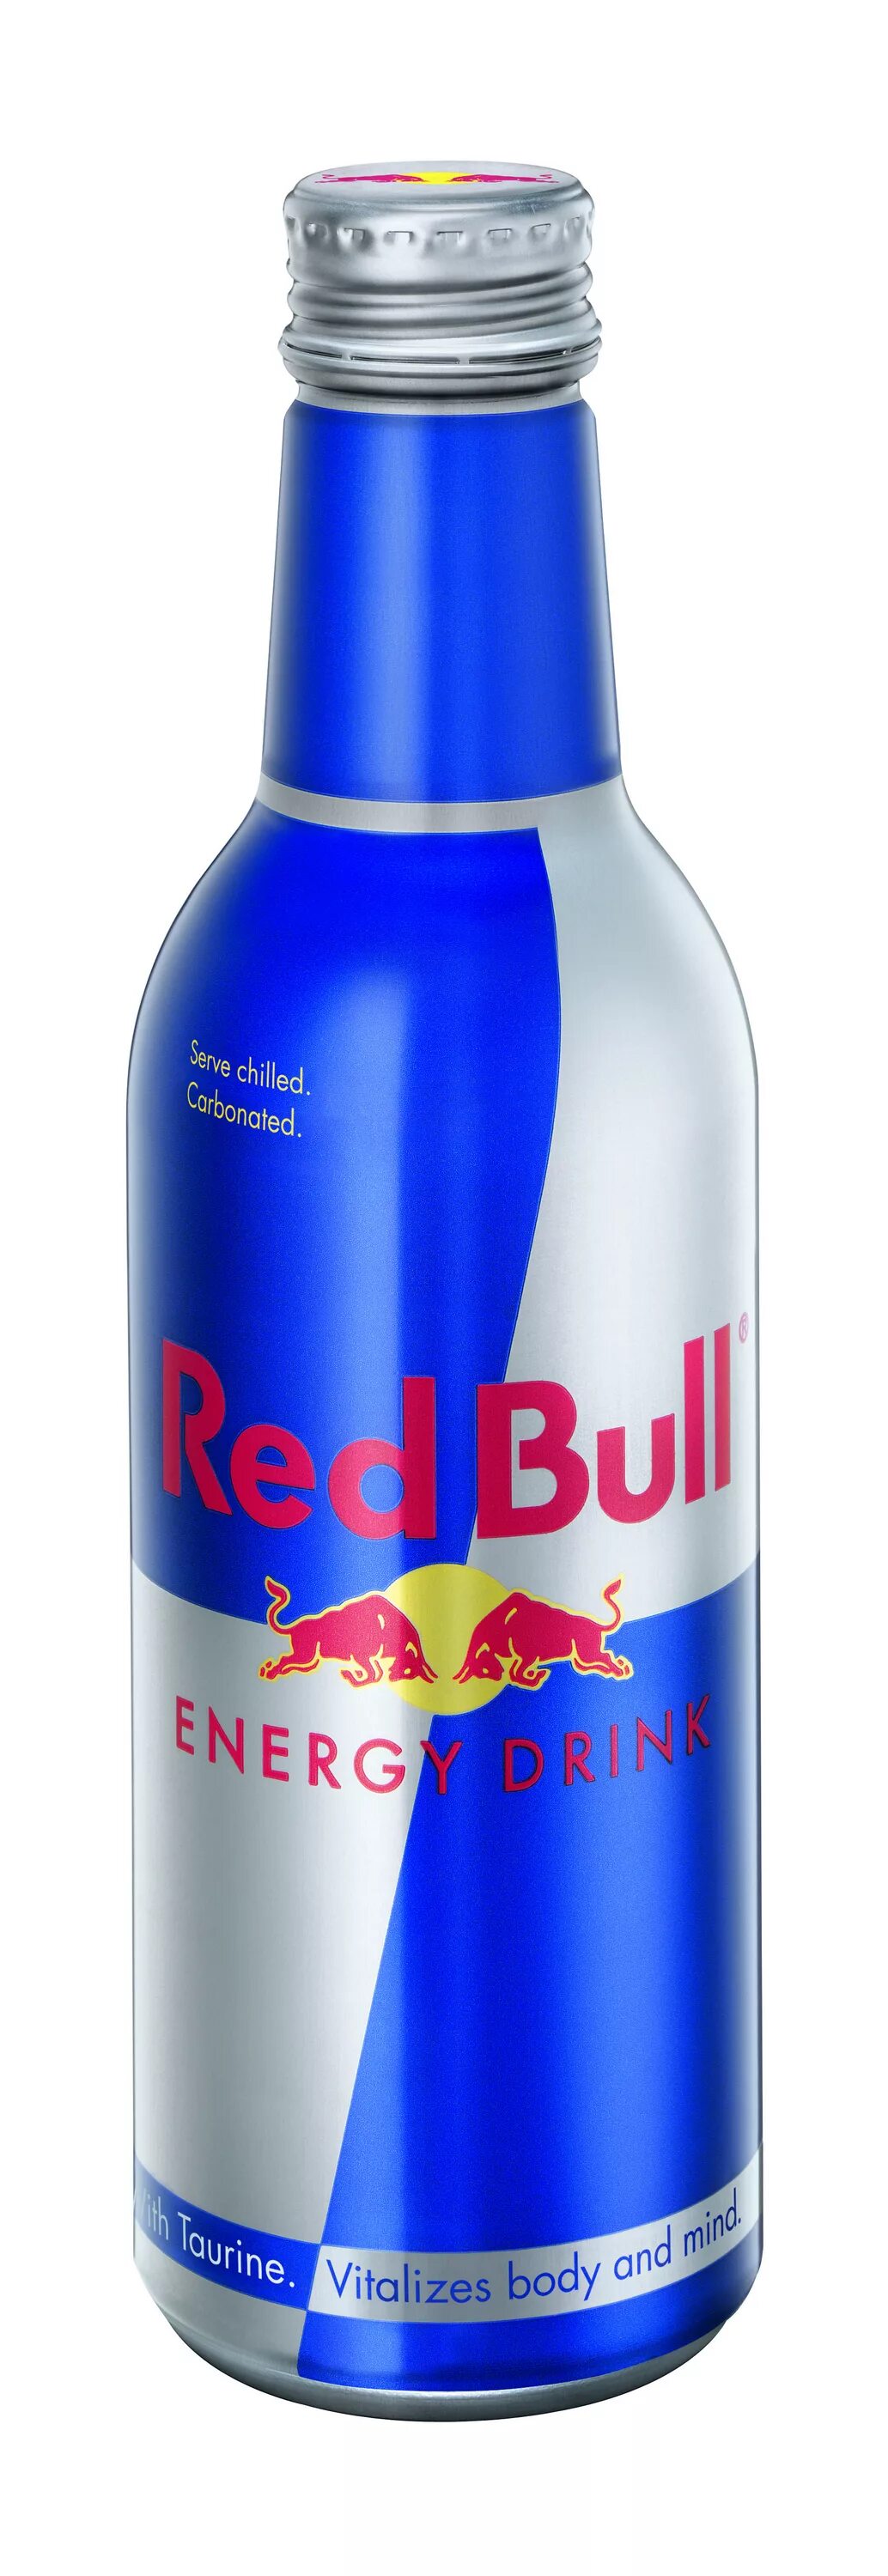 Алюминиевая бутылка Red bull. Red bull 0,33 л. Энергетический напиток Red bull. Ред Булл в алюминиевой бутылке. Red bull цена